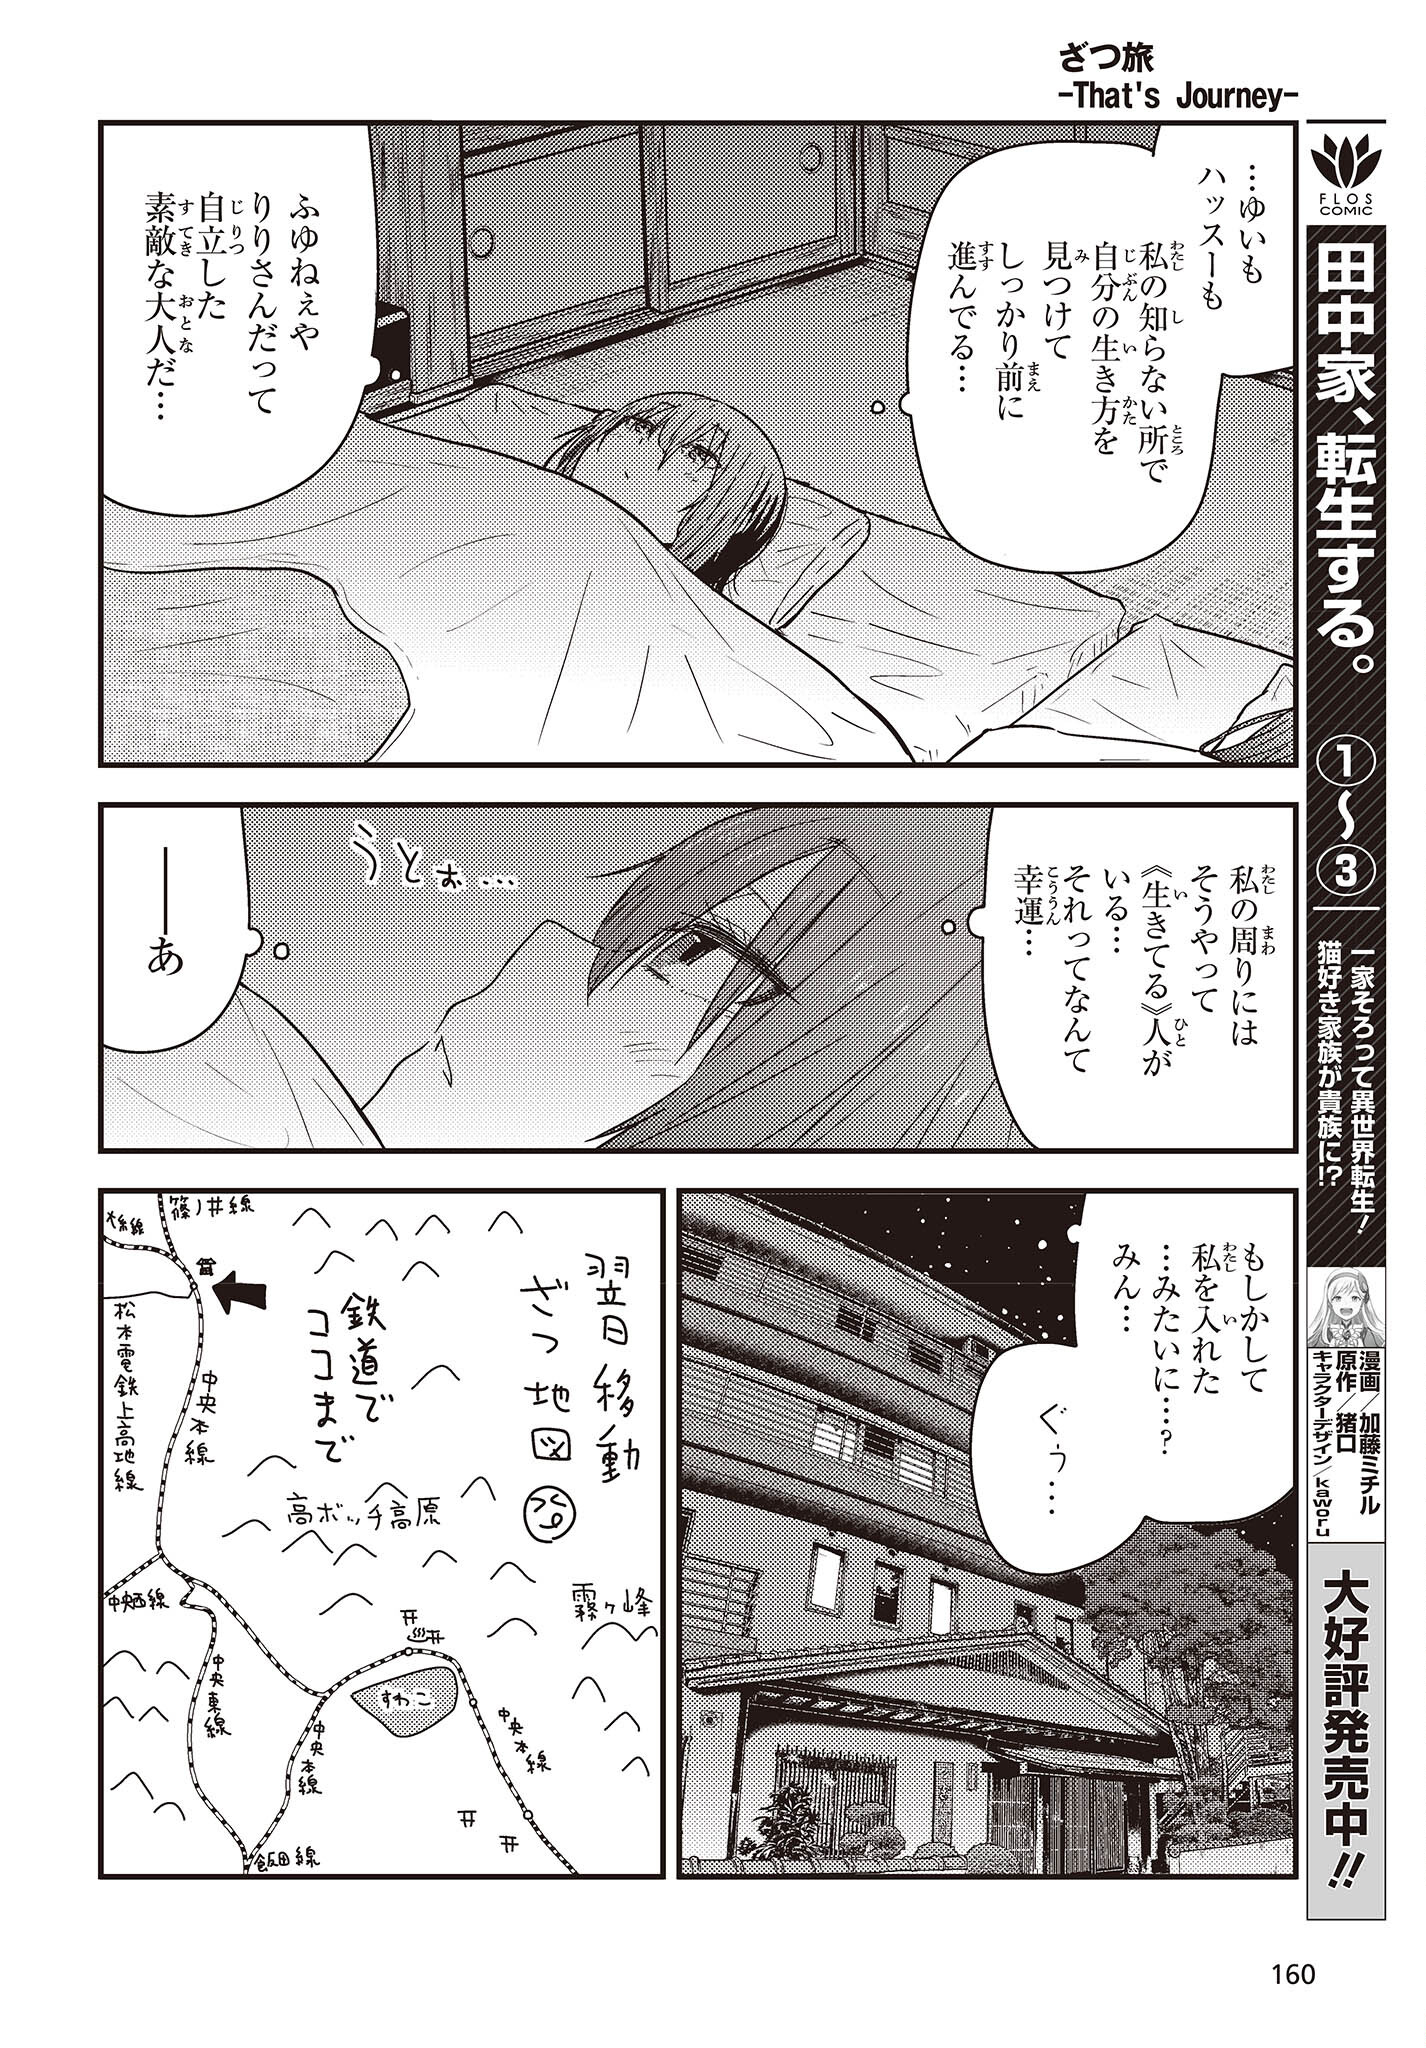 ざつ旅-That’s Journey- 第28.2話 - Page 18